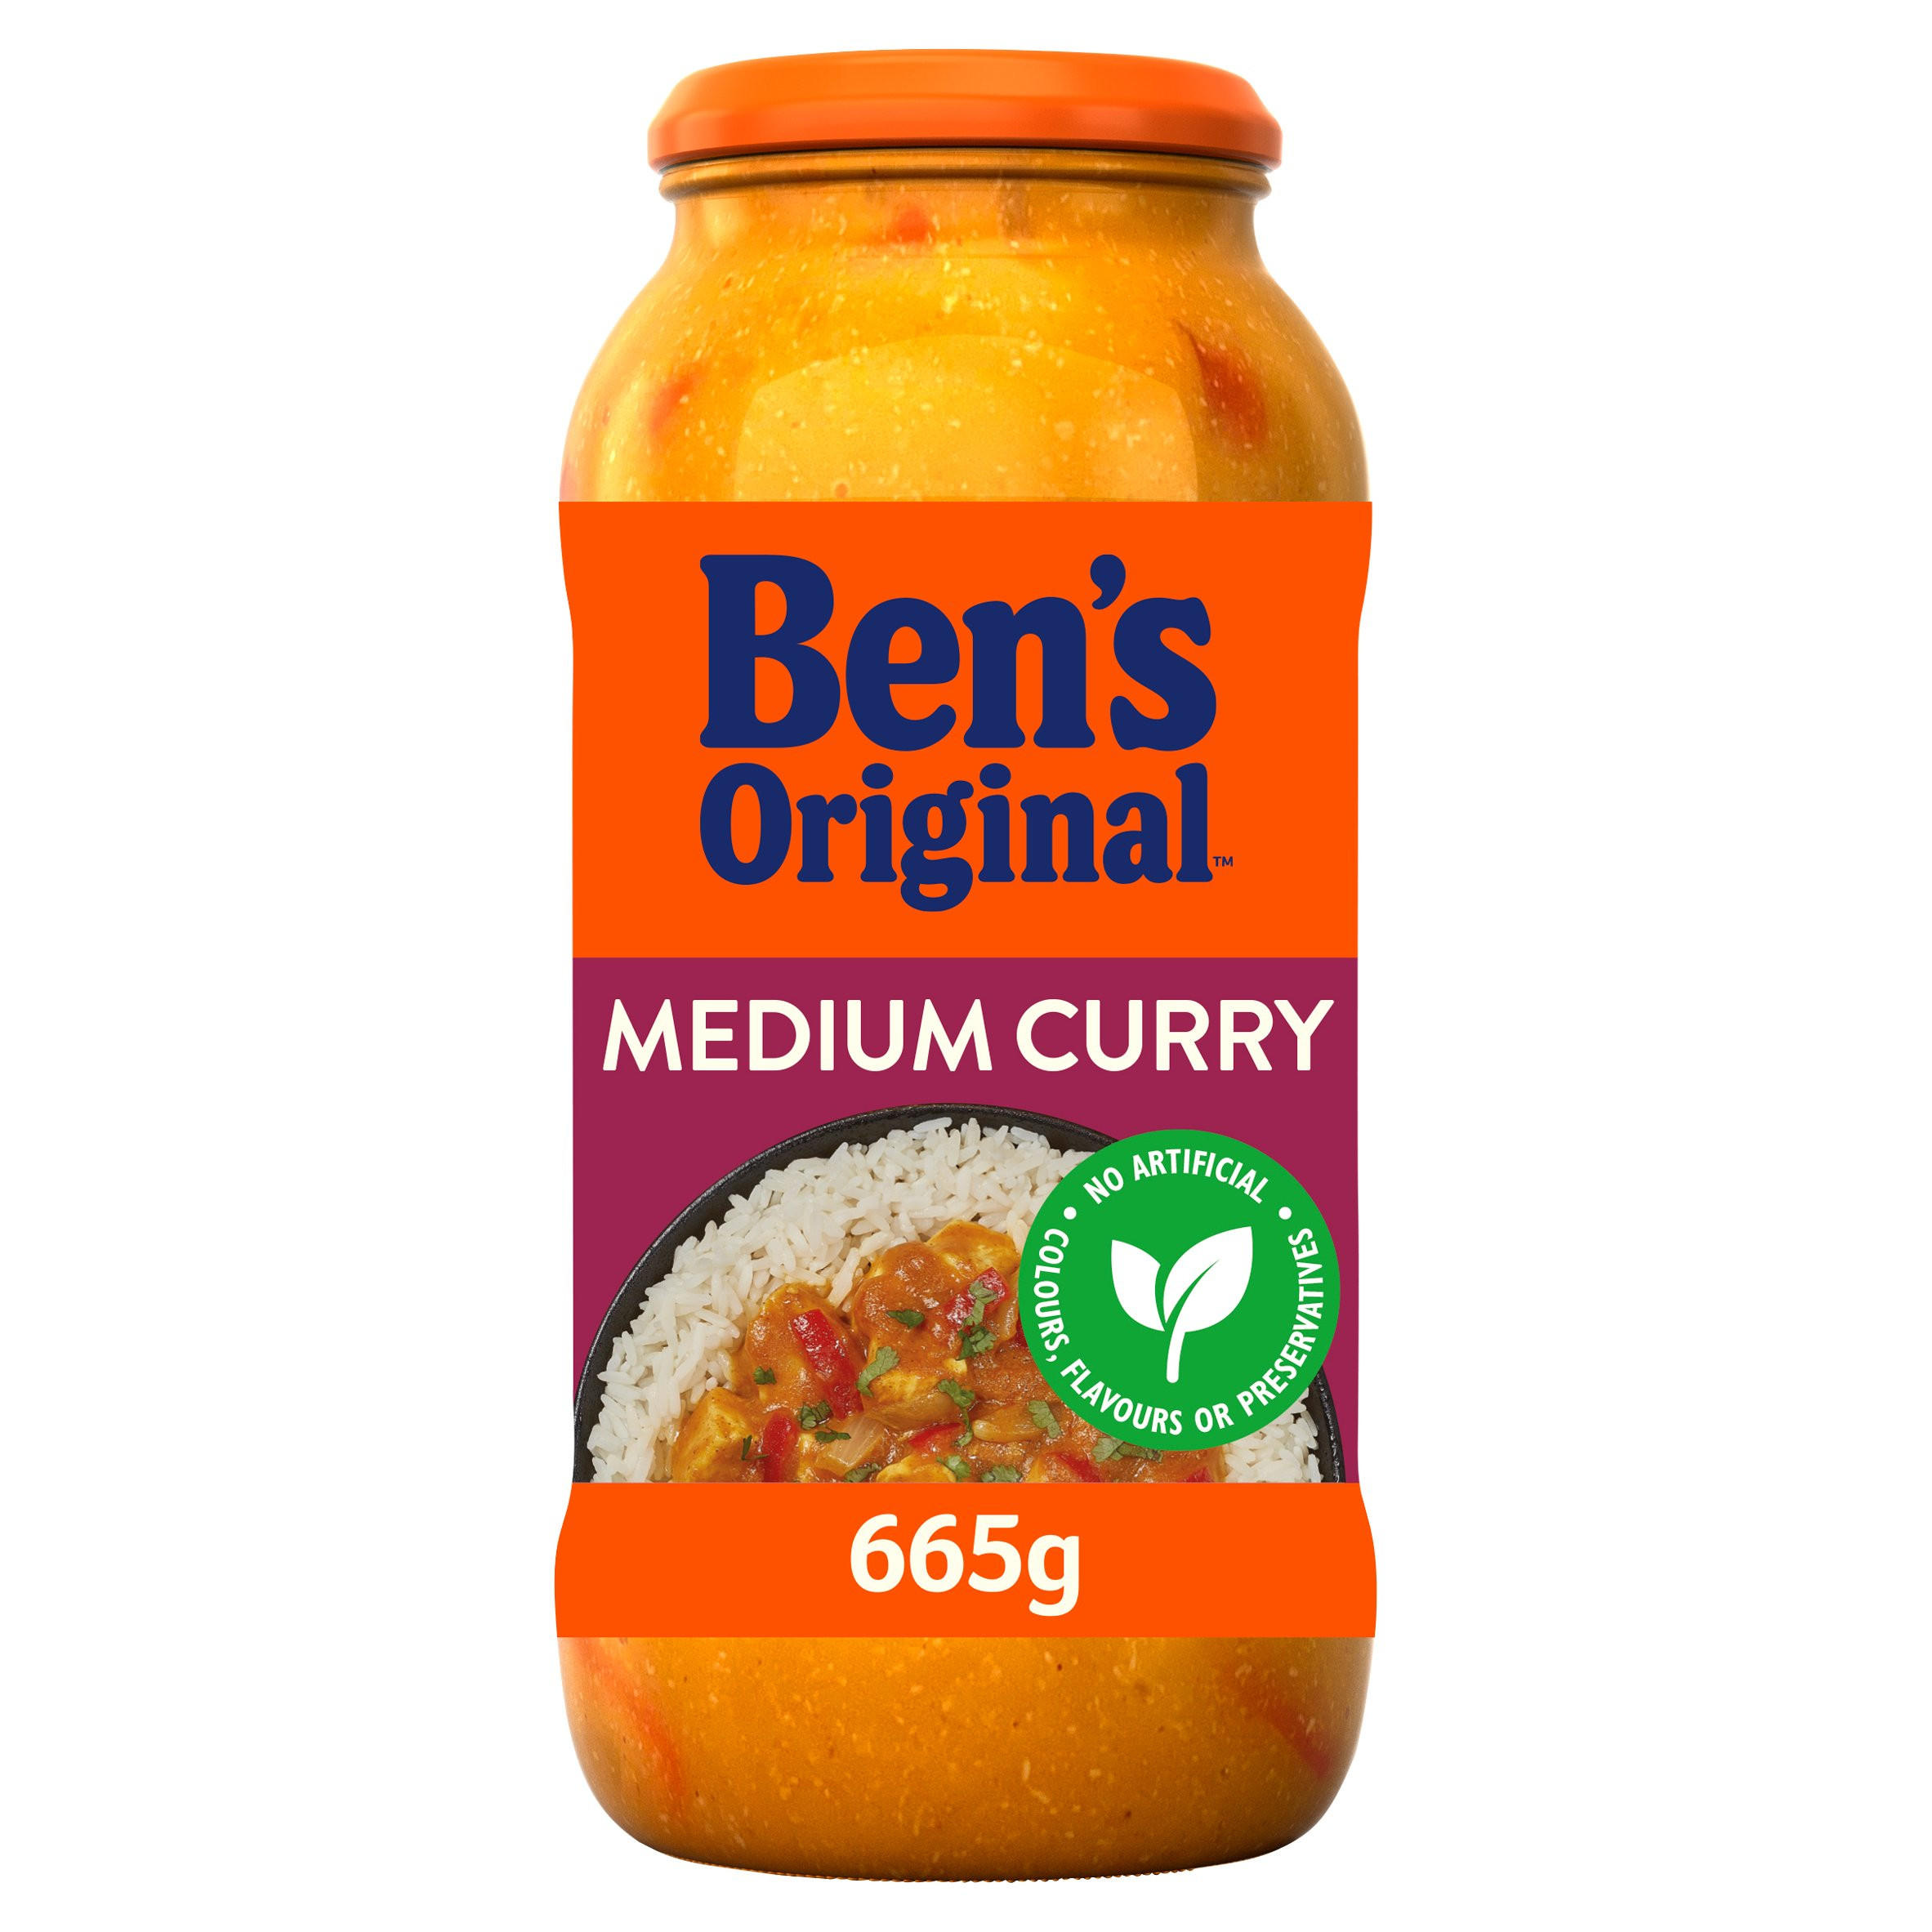 Bens Original Medium Curry Sauce 665g | Indian and Curry Sauces ...